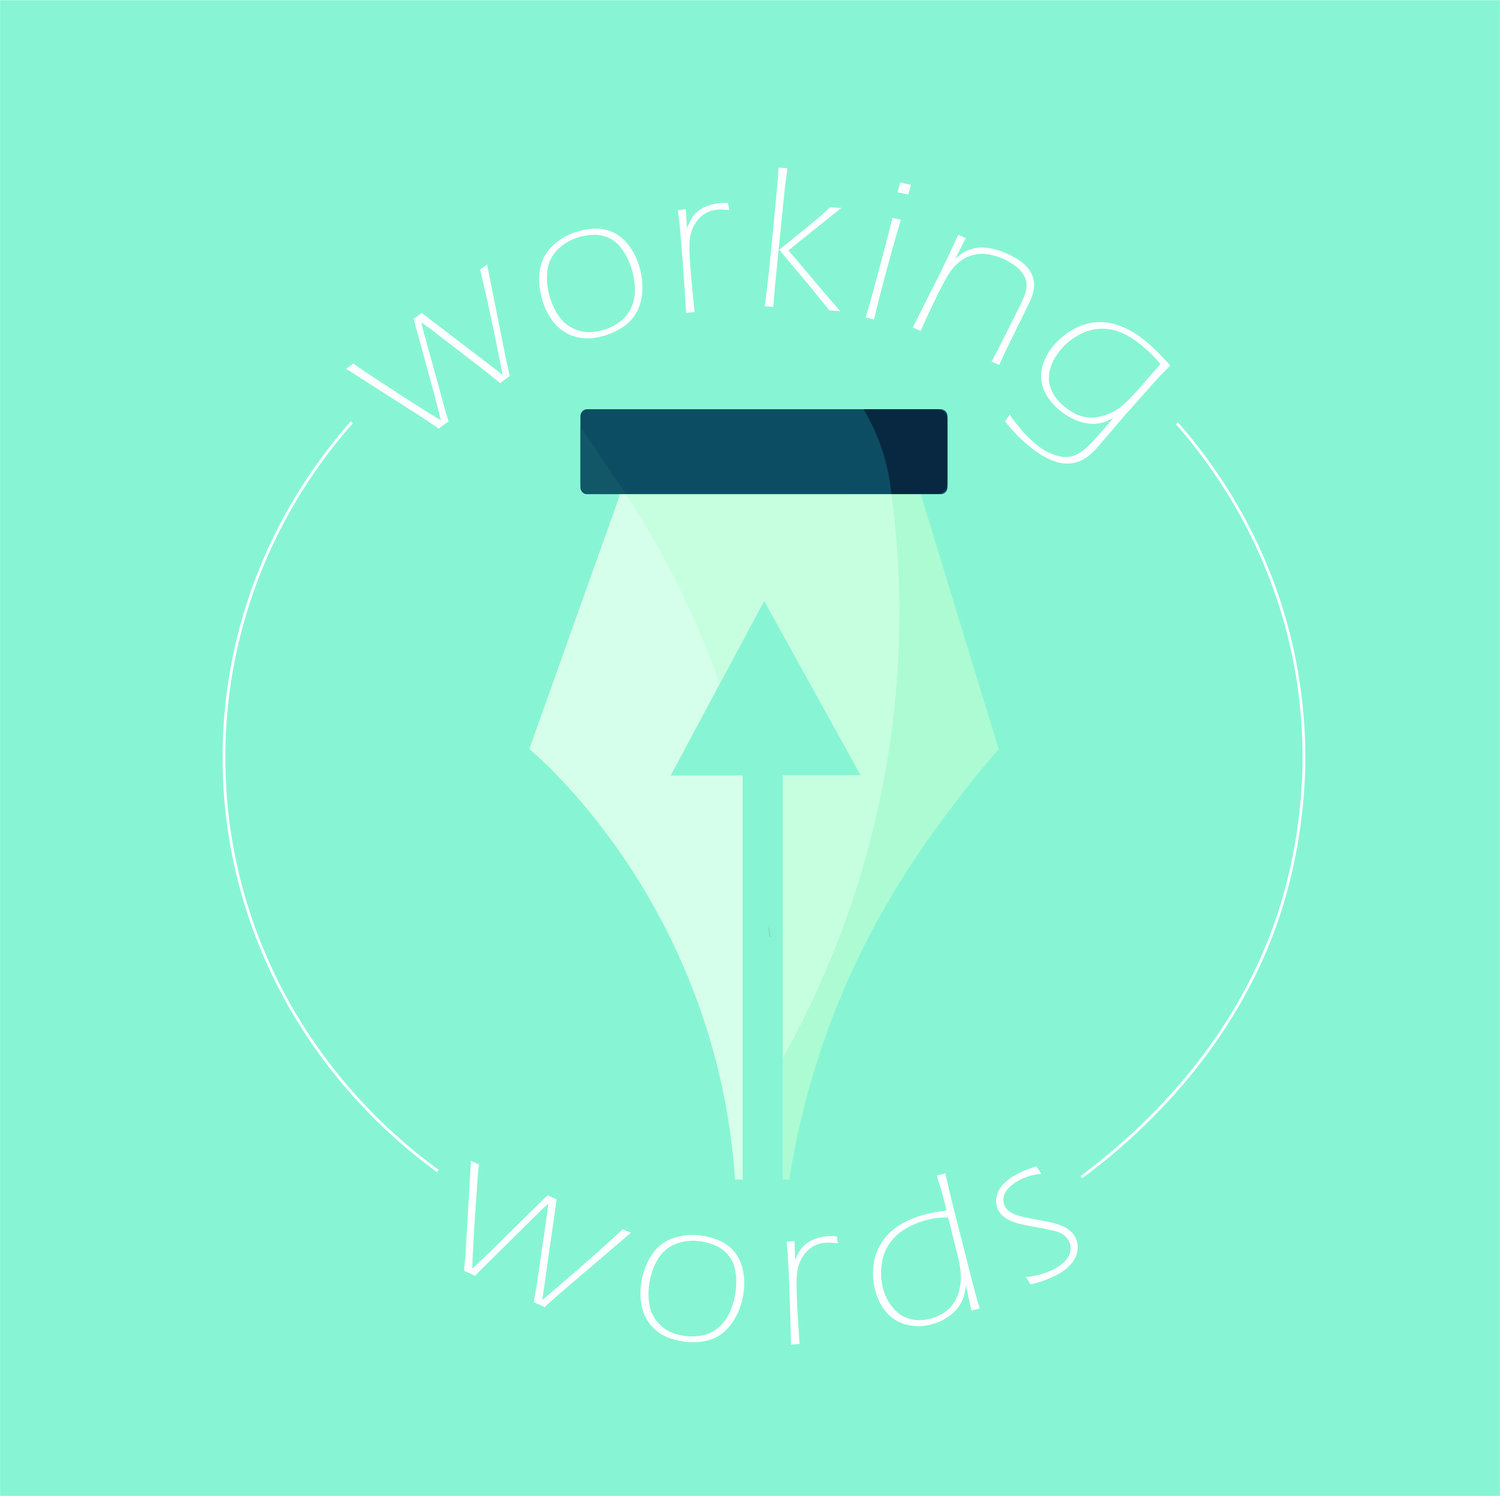 Working Words NZ